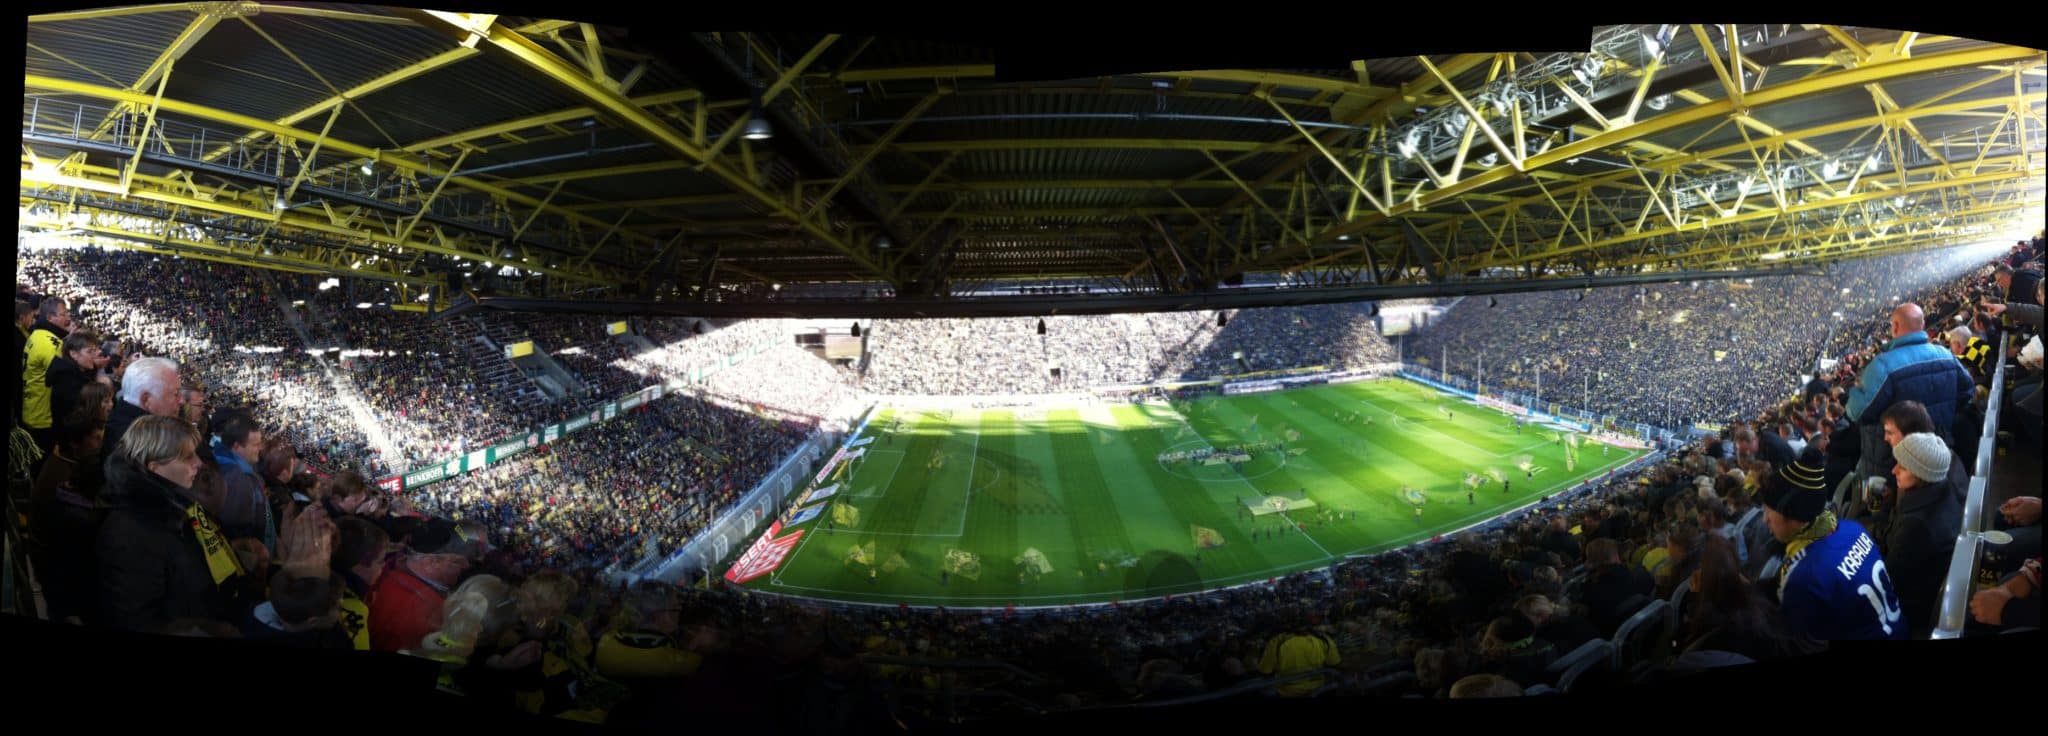 Der Saisongewinner erhält zwei VIP-Tickets für ein Spiel von Borussia Dortmund im Signal Iduna Park